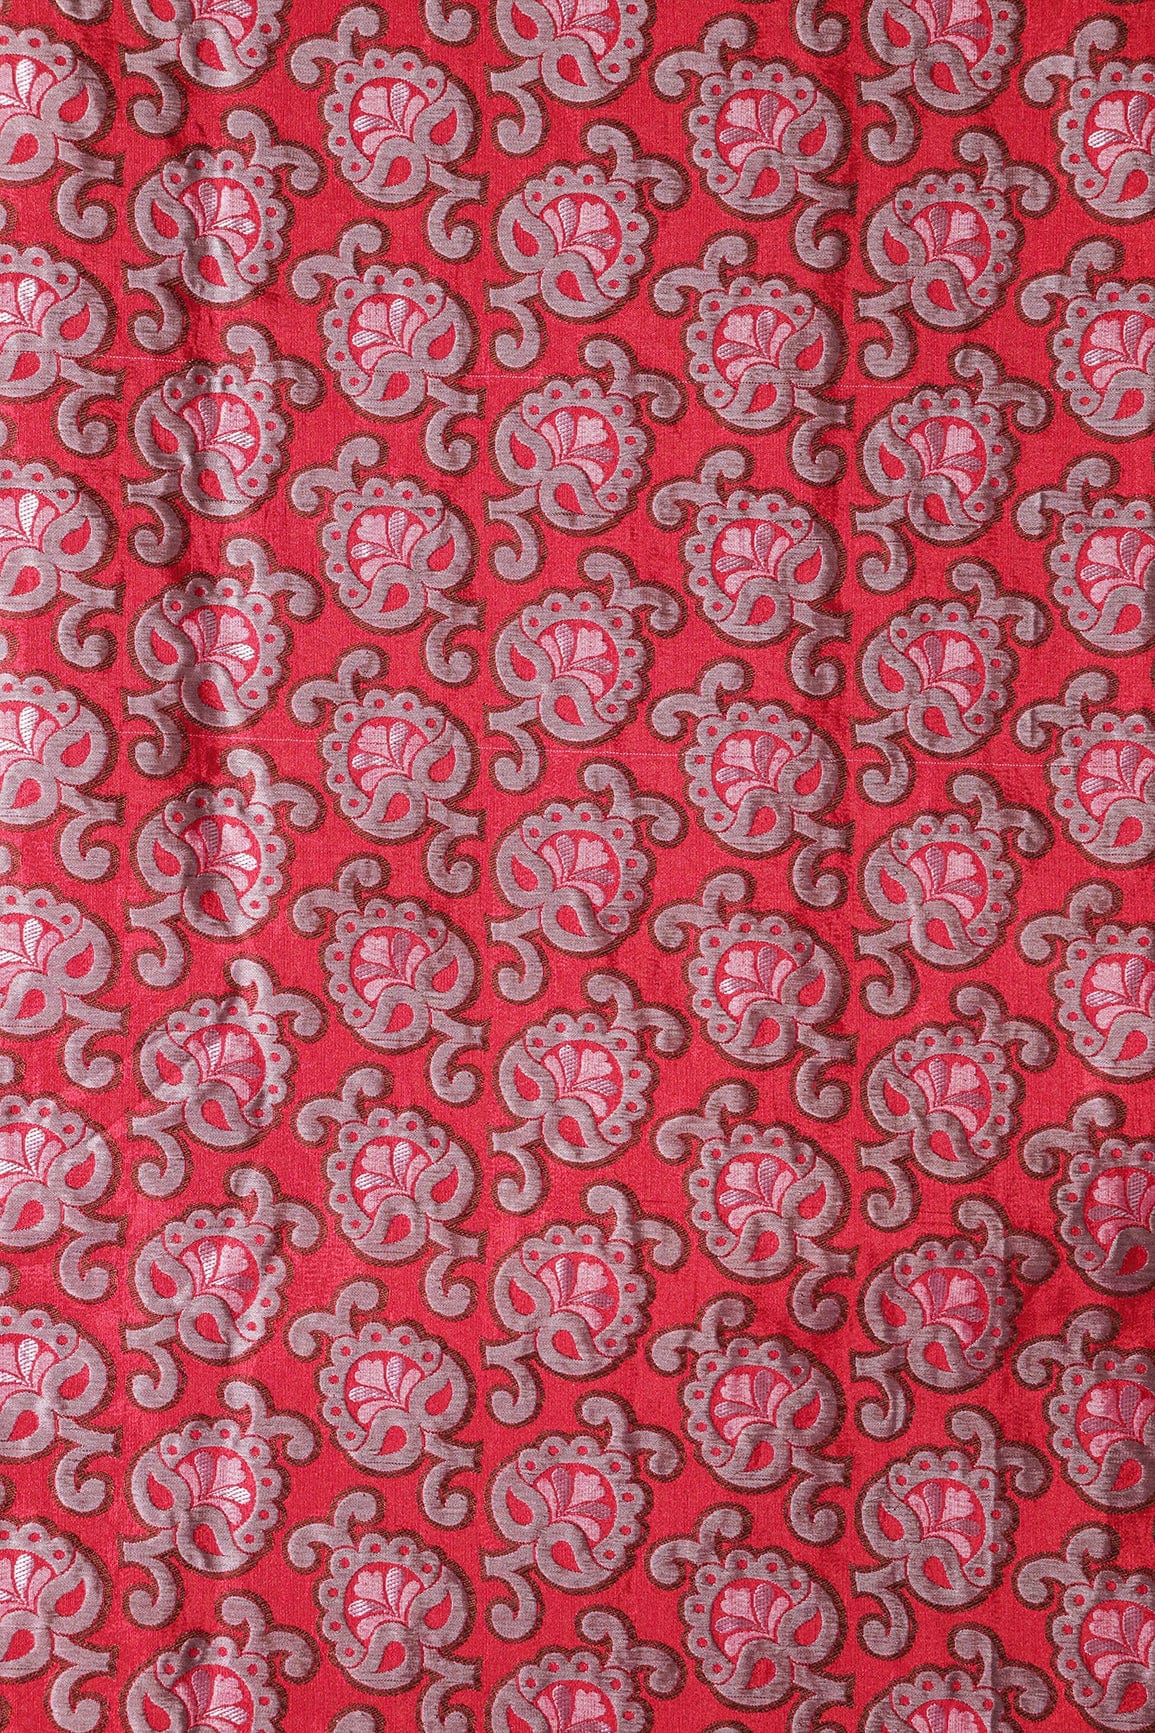 doeraa Banarasi Fabrics Red And Grey Floral Silk Satin Jute Banarasi Jacquard Fabric